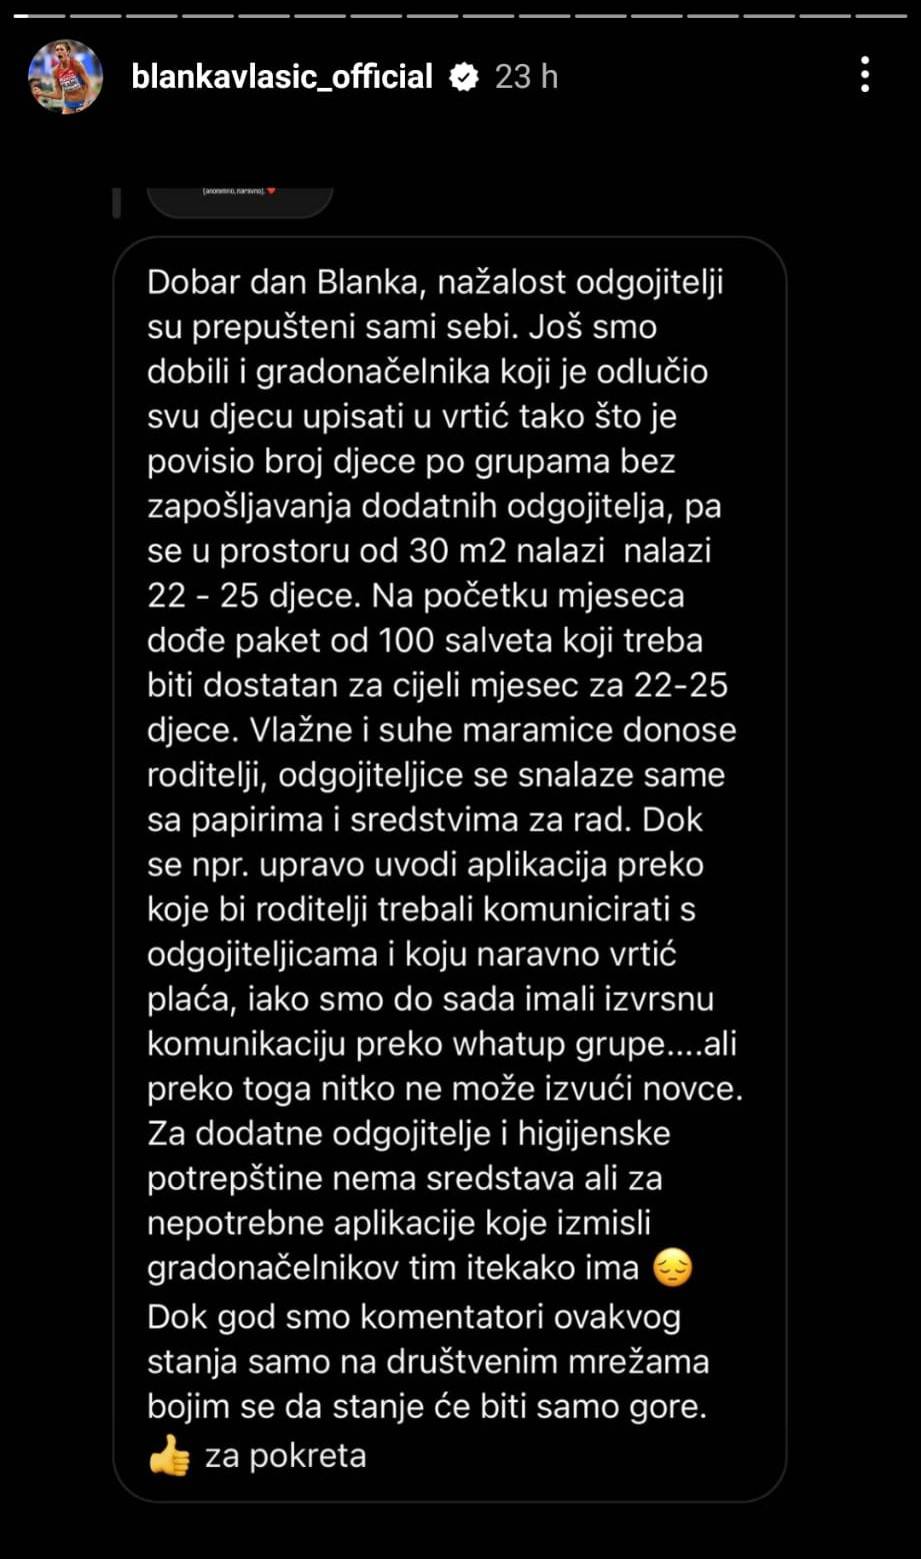 Blanka Vlašić objavila priče teta iz vrtića: 'Nemoguće je i fizički, a i psihički, jad i čemer sustava'